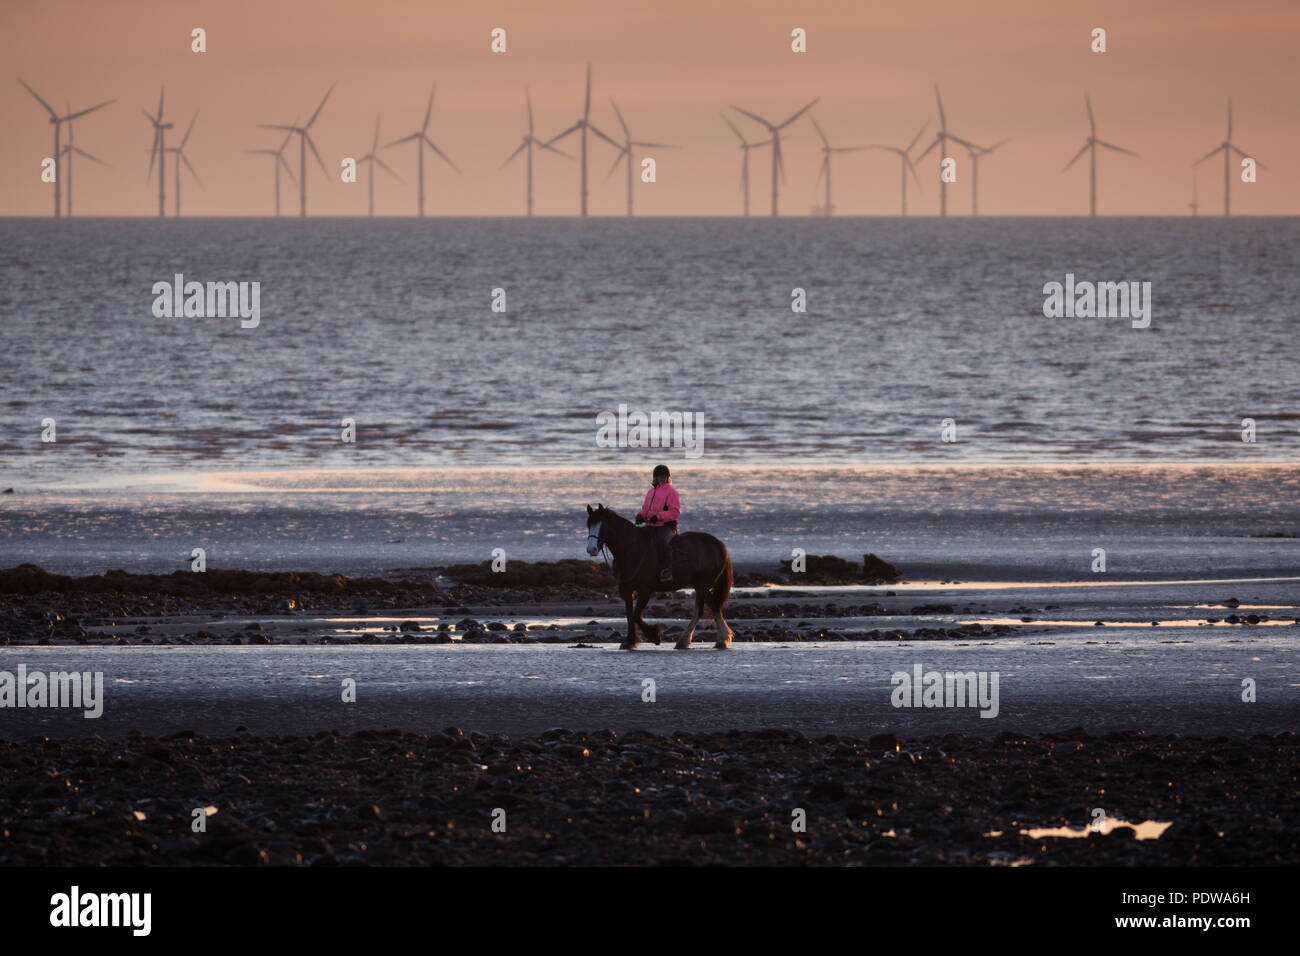 Une femme montant un cheval au crépuscule sur la plage de l'île de Walney, Barrow-in-Furness, Cumbria. Éoliennes en mer peut être vu dans la distance. Banque D'Images